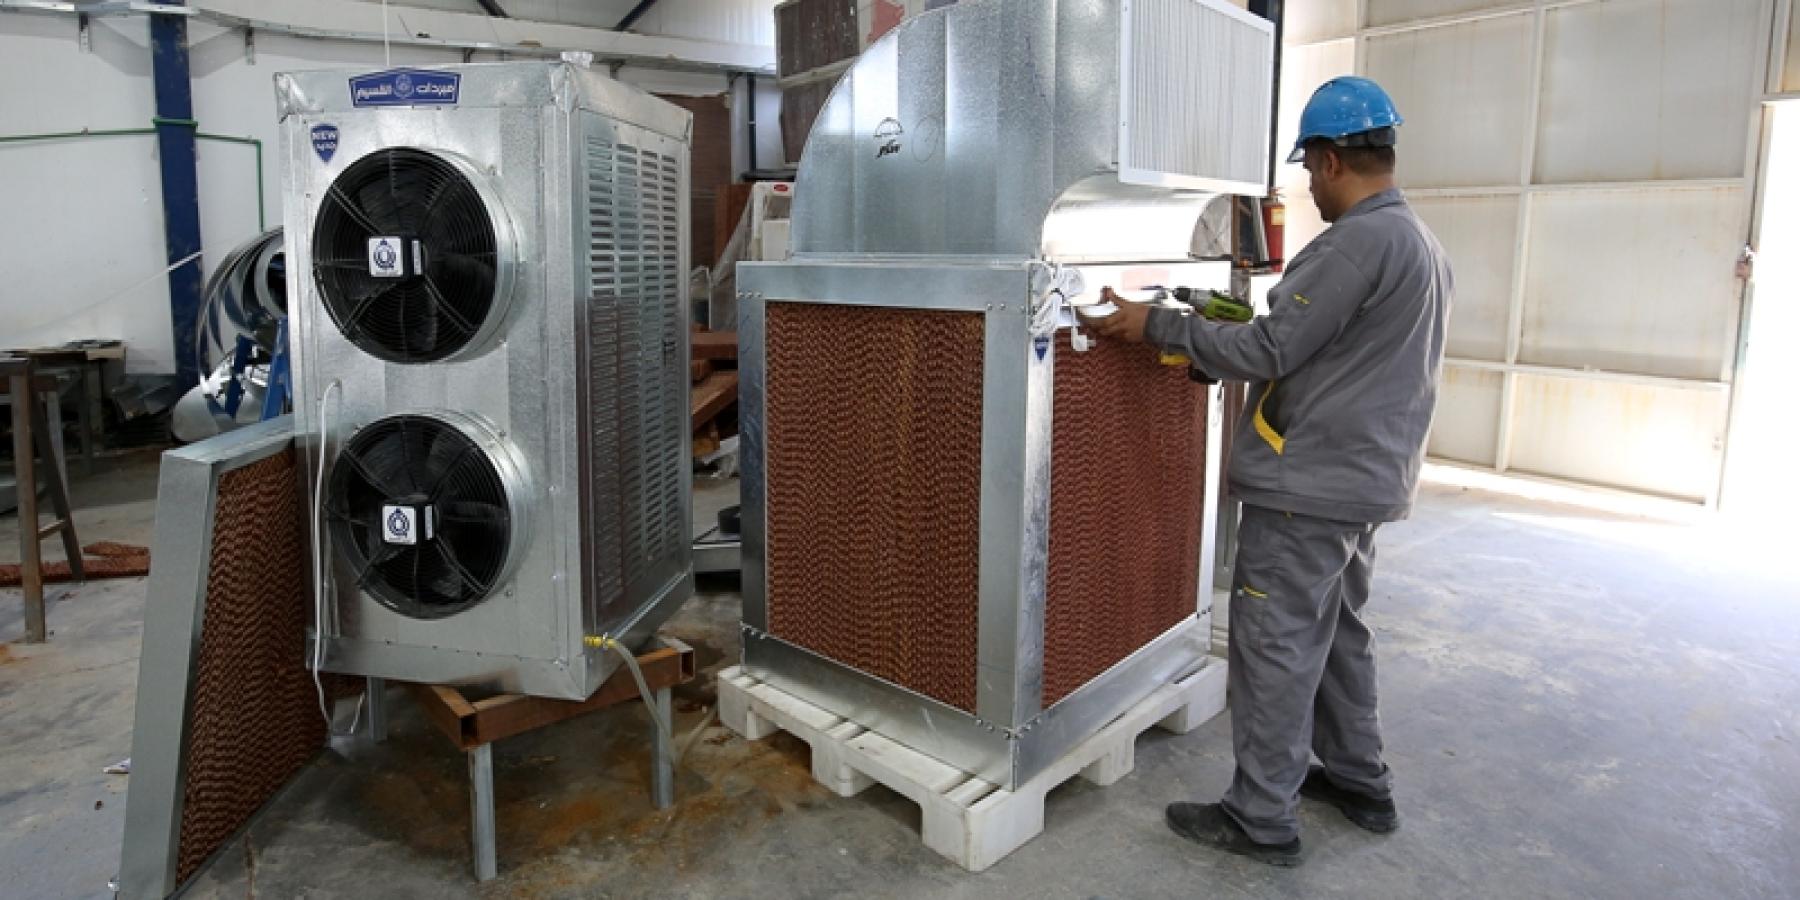 قسم التبريد والميكانيك في العتبة العلوية يعمل على تطوير صناعته من مبردات الهواء  